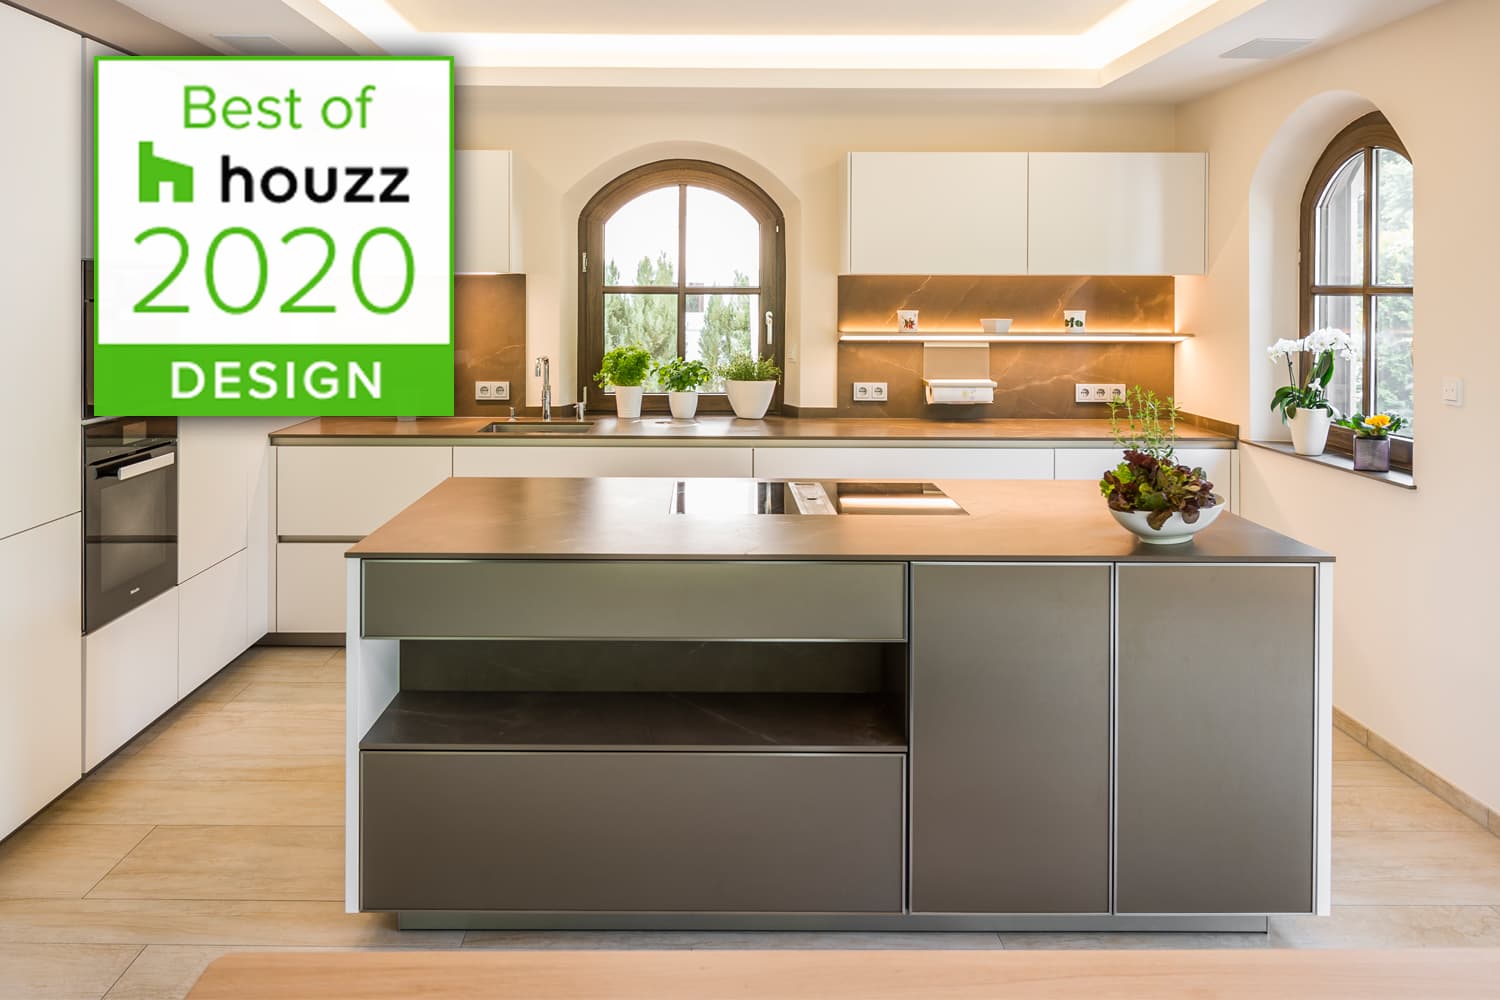 Auszeichnung "Best of houzz 2020" Design"